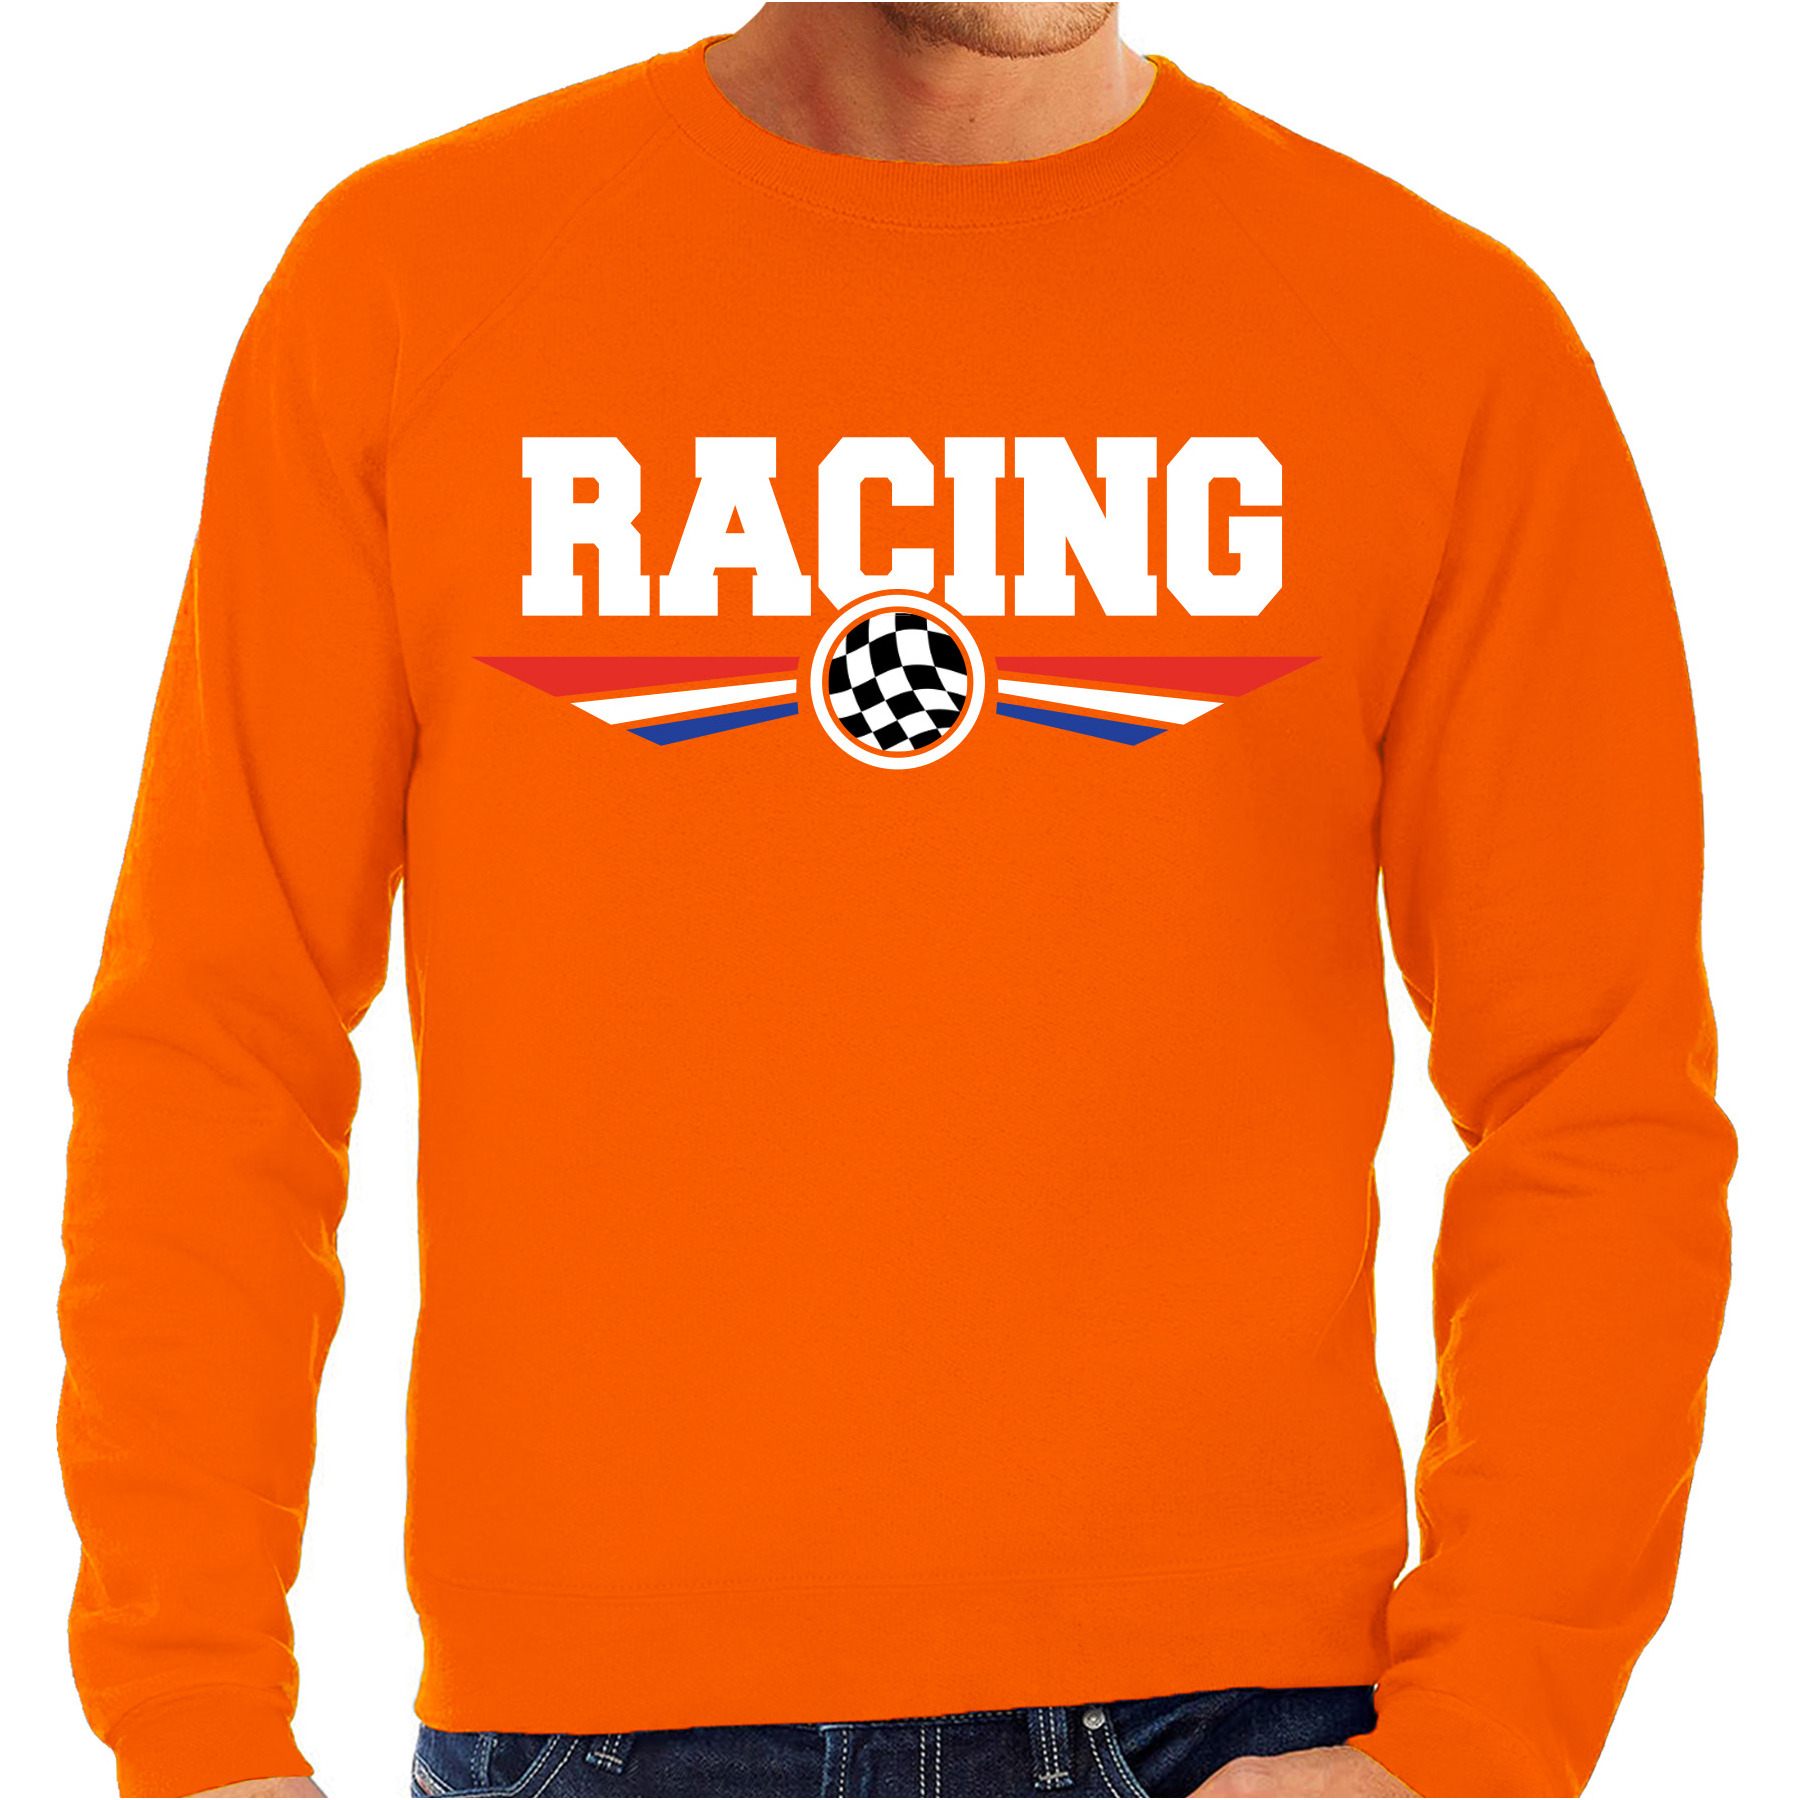 Racing coureur supporter sweater - trui met Nederlandse vlag oranje voor heren